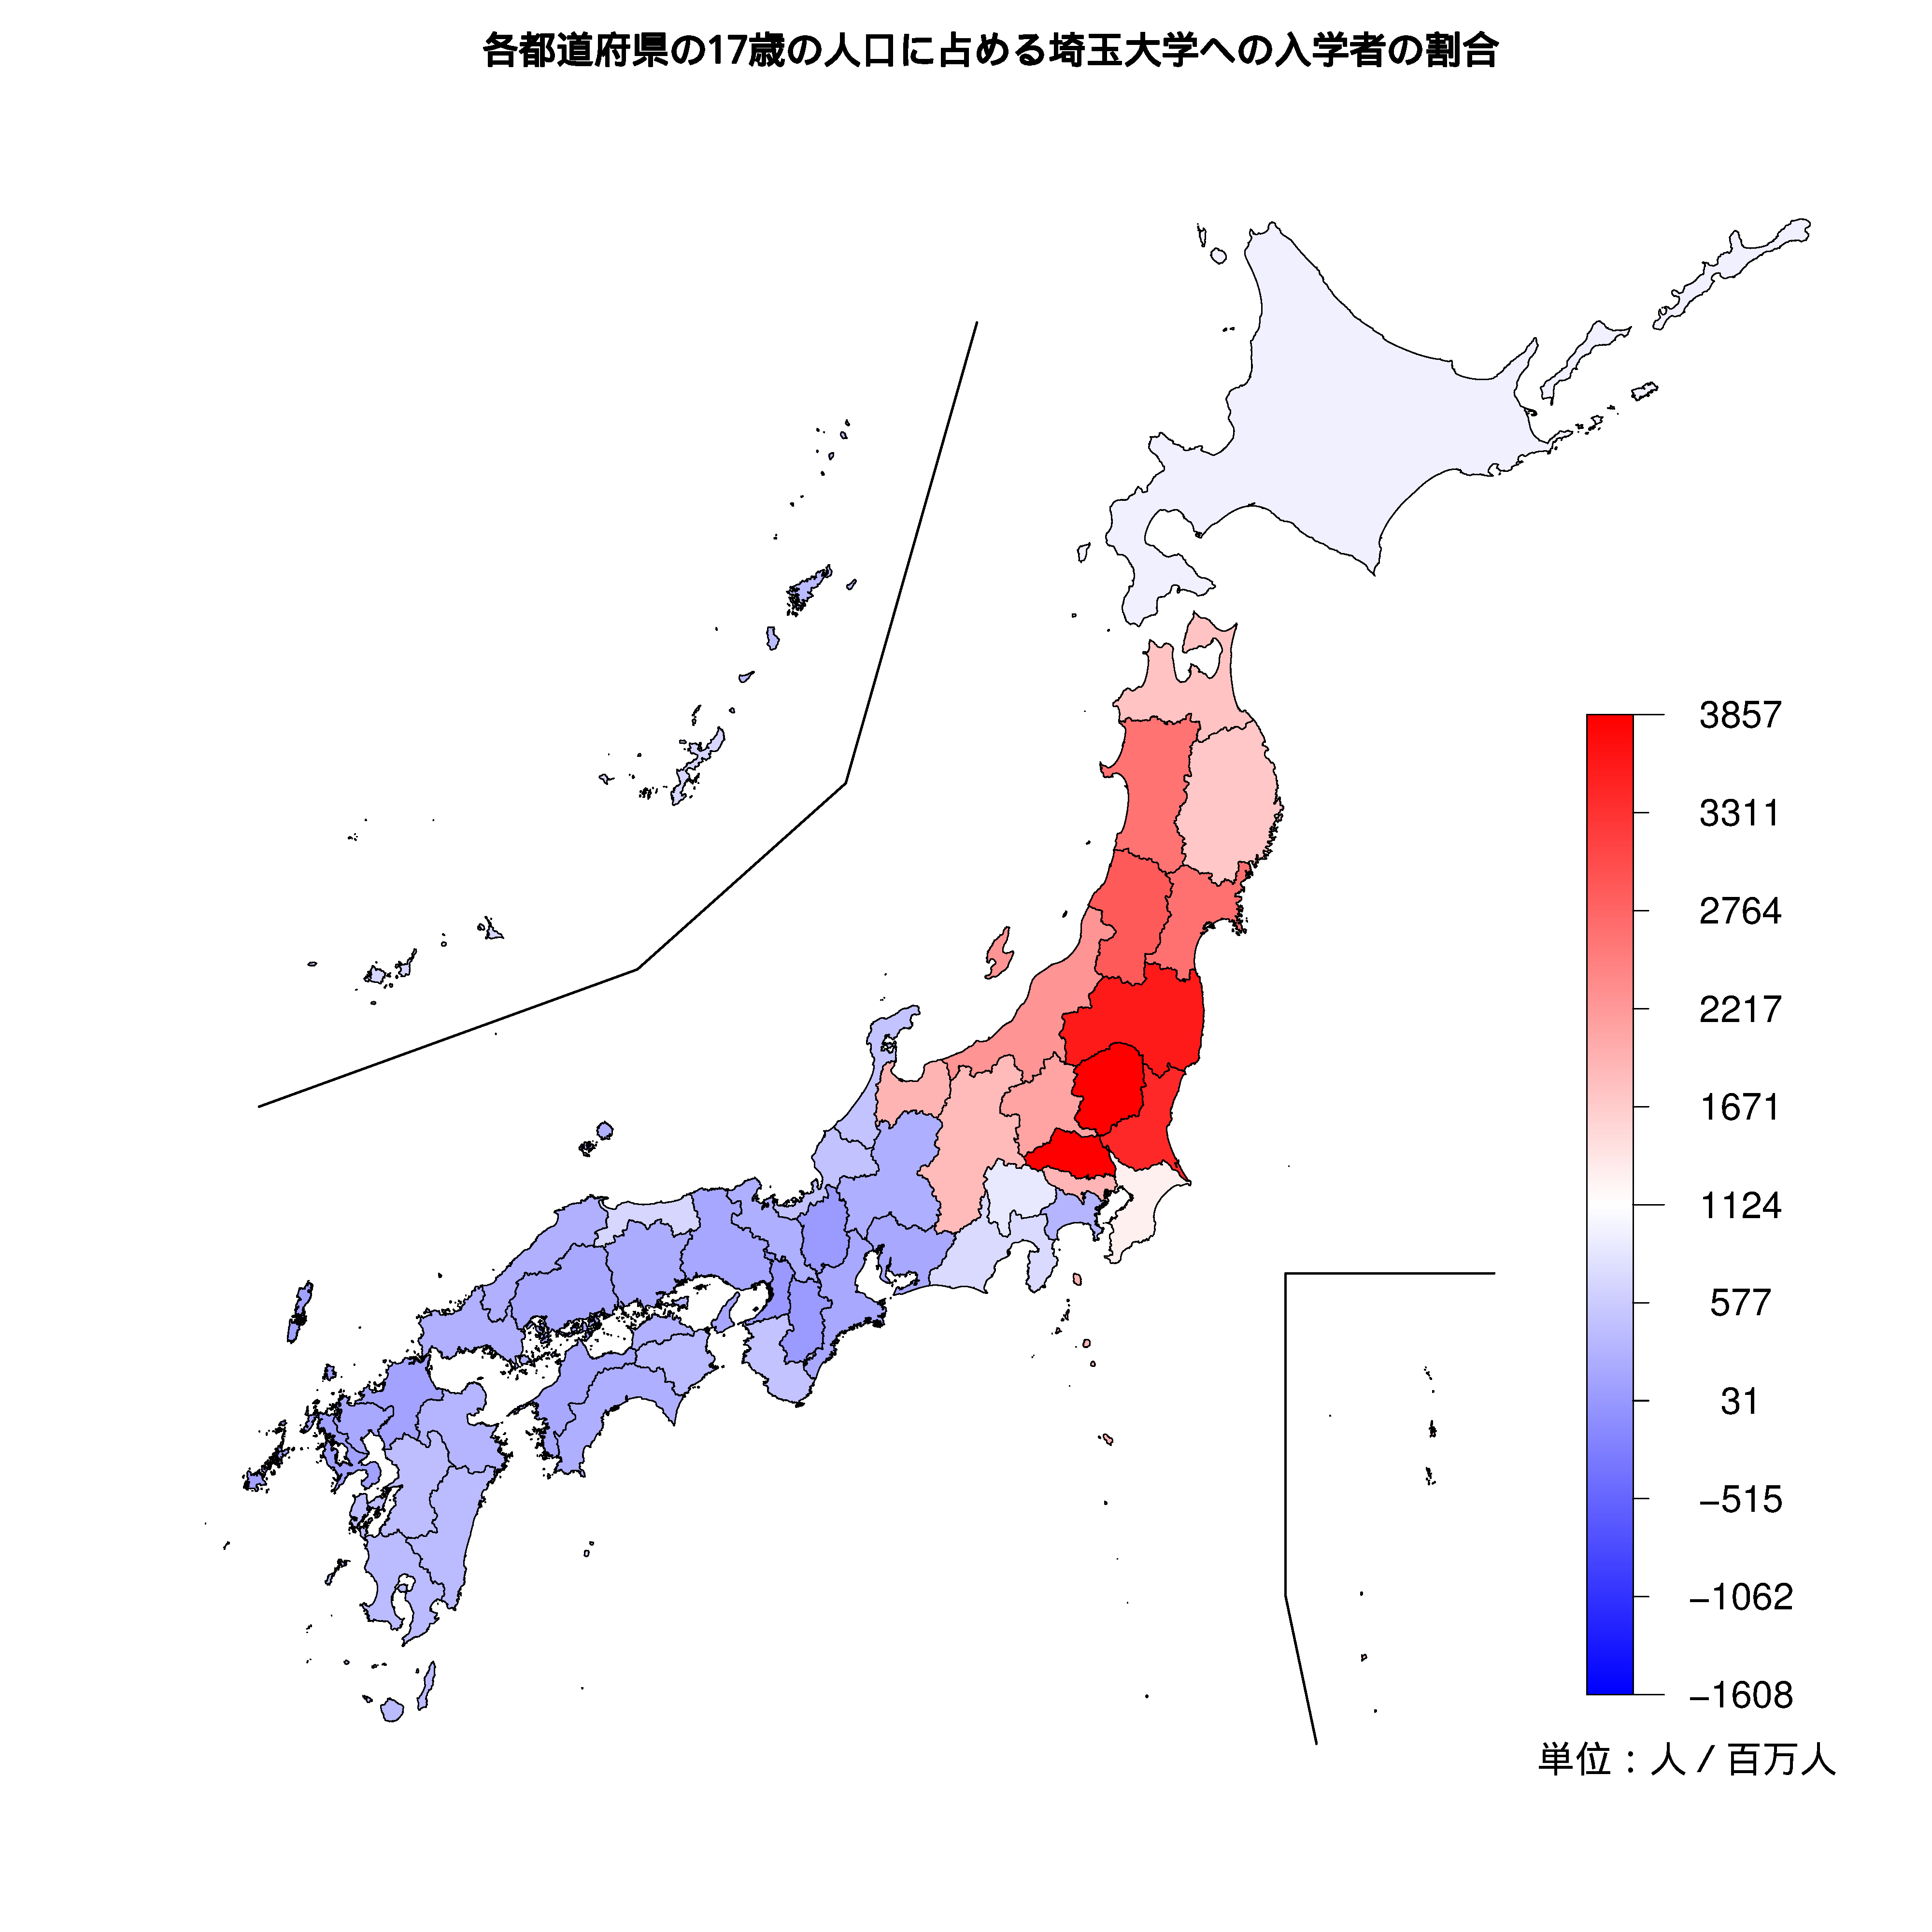 埼玉大学への入学者が多い都道府県の色分け地図